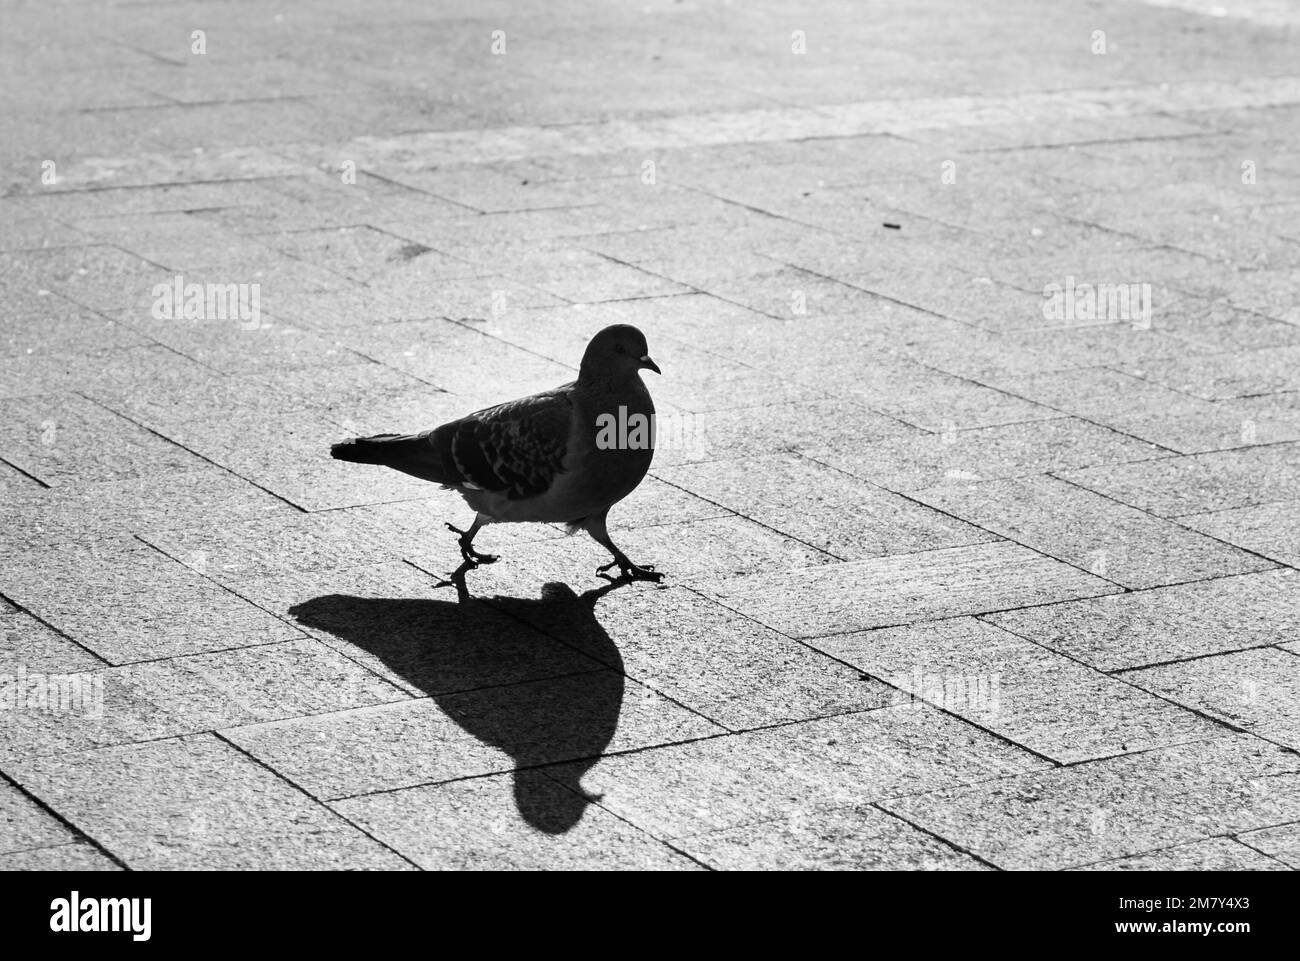 La silhouette di piccione della città si presenta con ampie strisce e ombre sul pavimento su sfondo sfocato alla luce del sole sullo sfondo Foto Stock